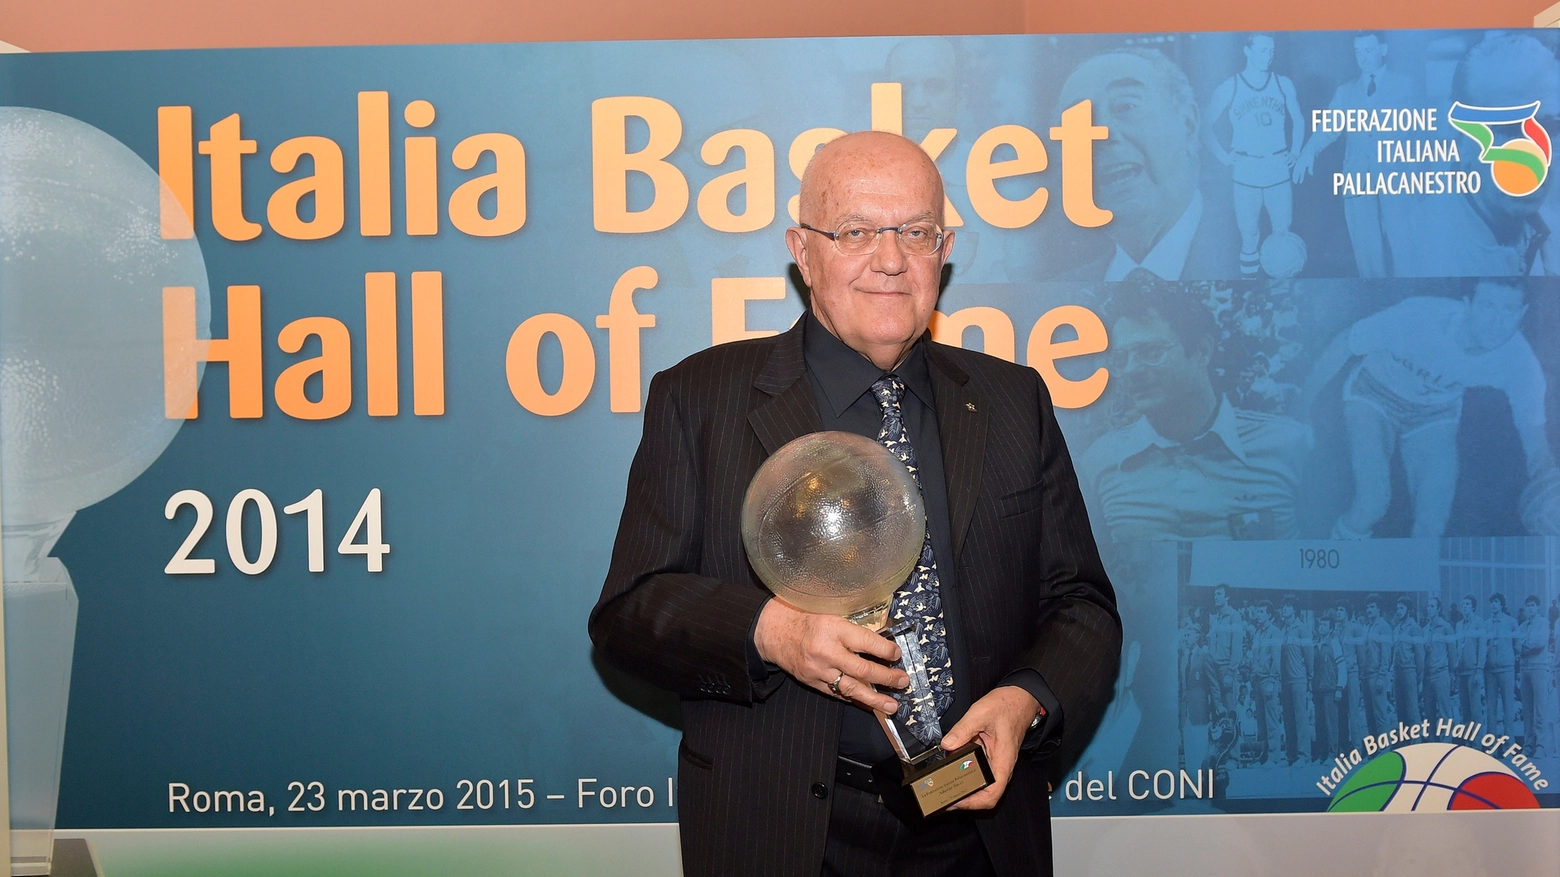 Alberto Bucci, Day Hall of Fame 2014 (Ciamillo)